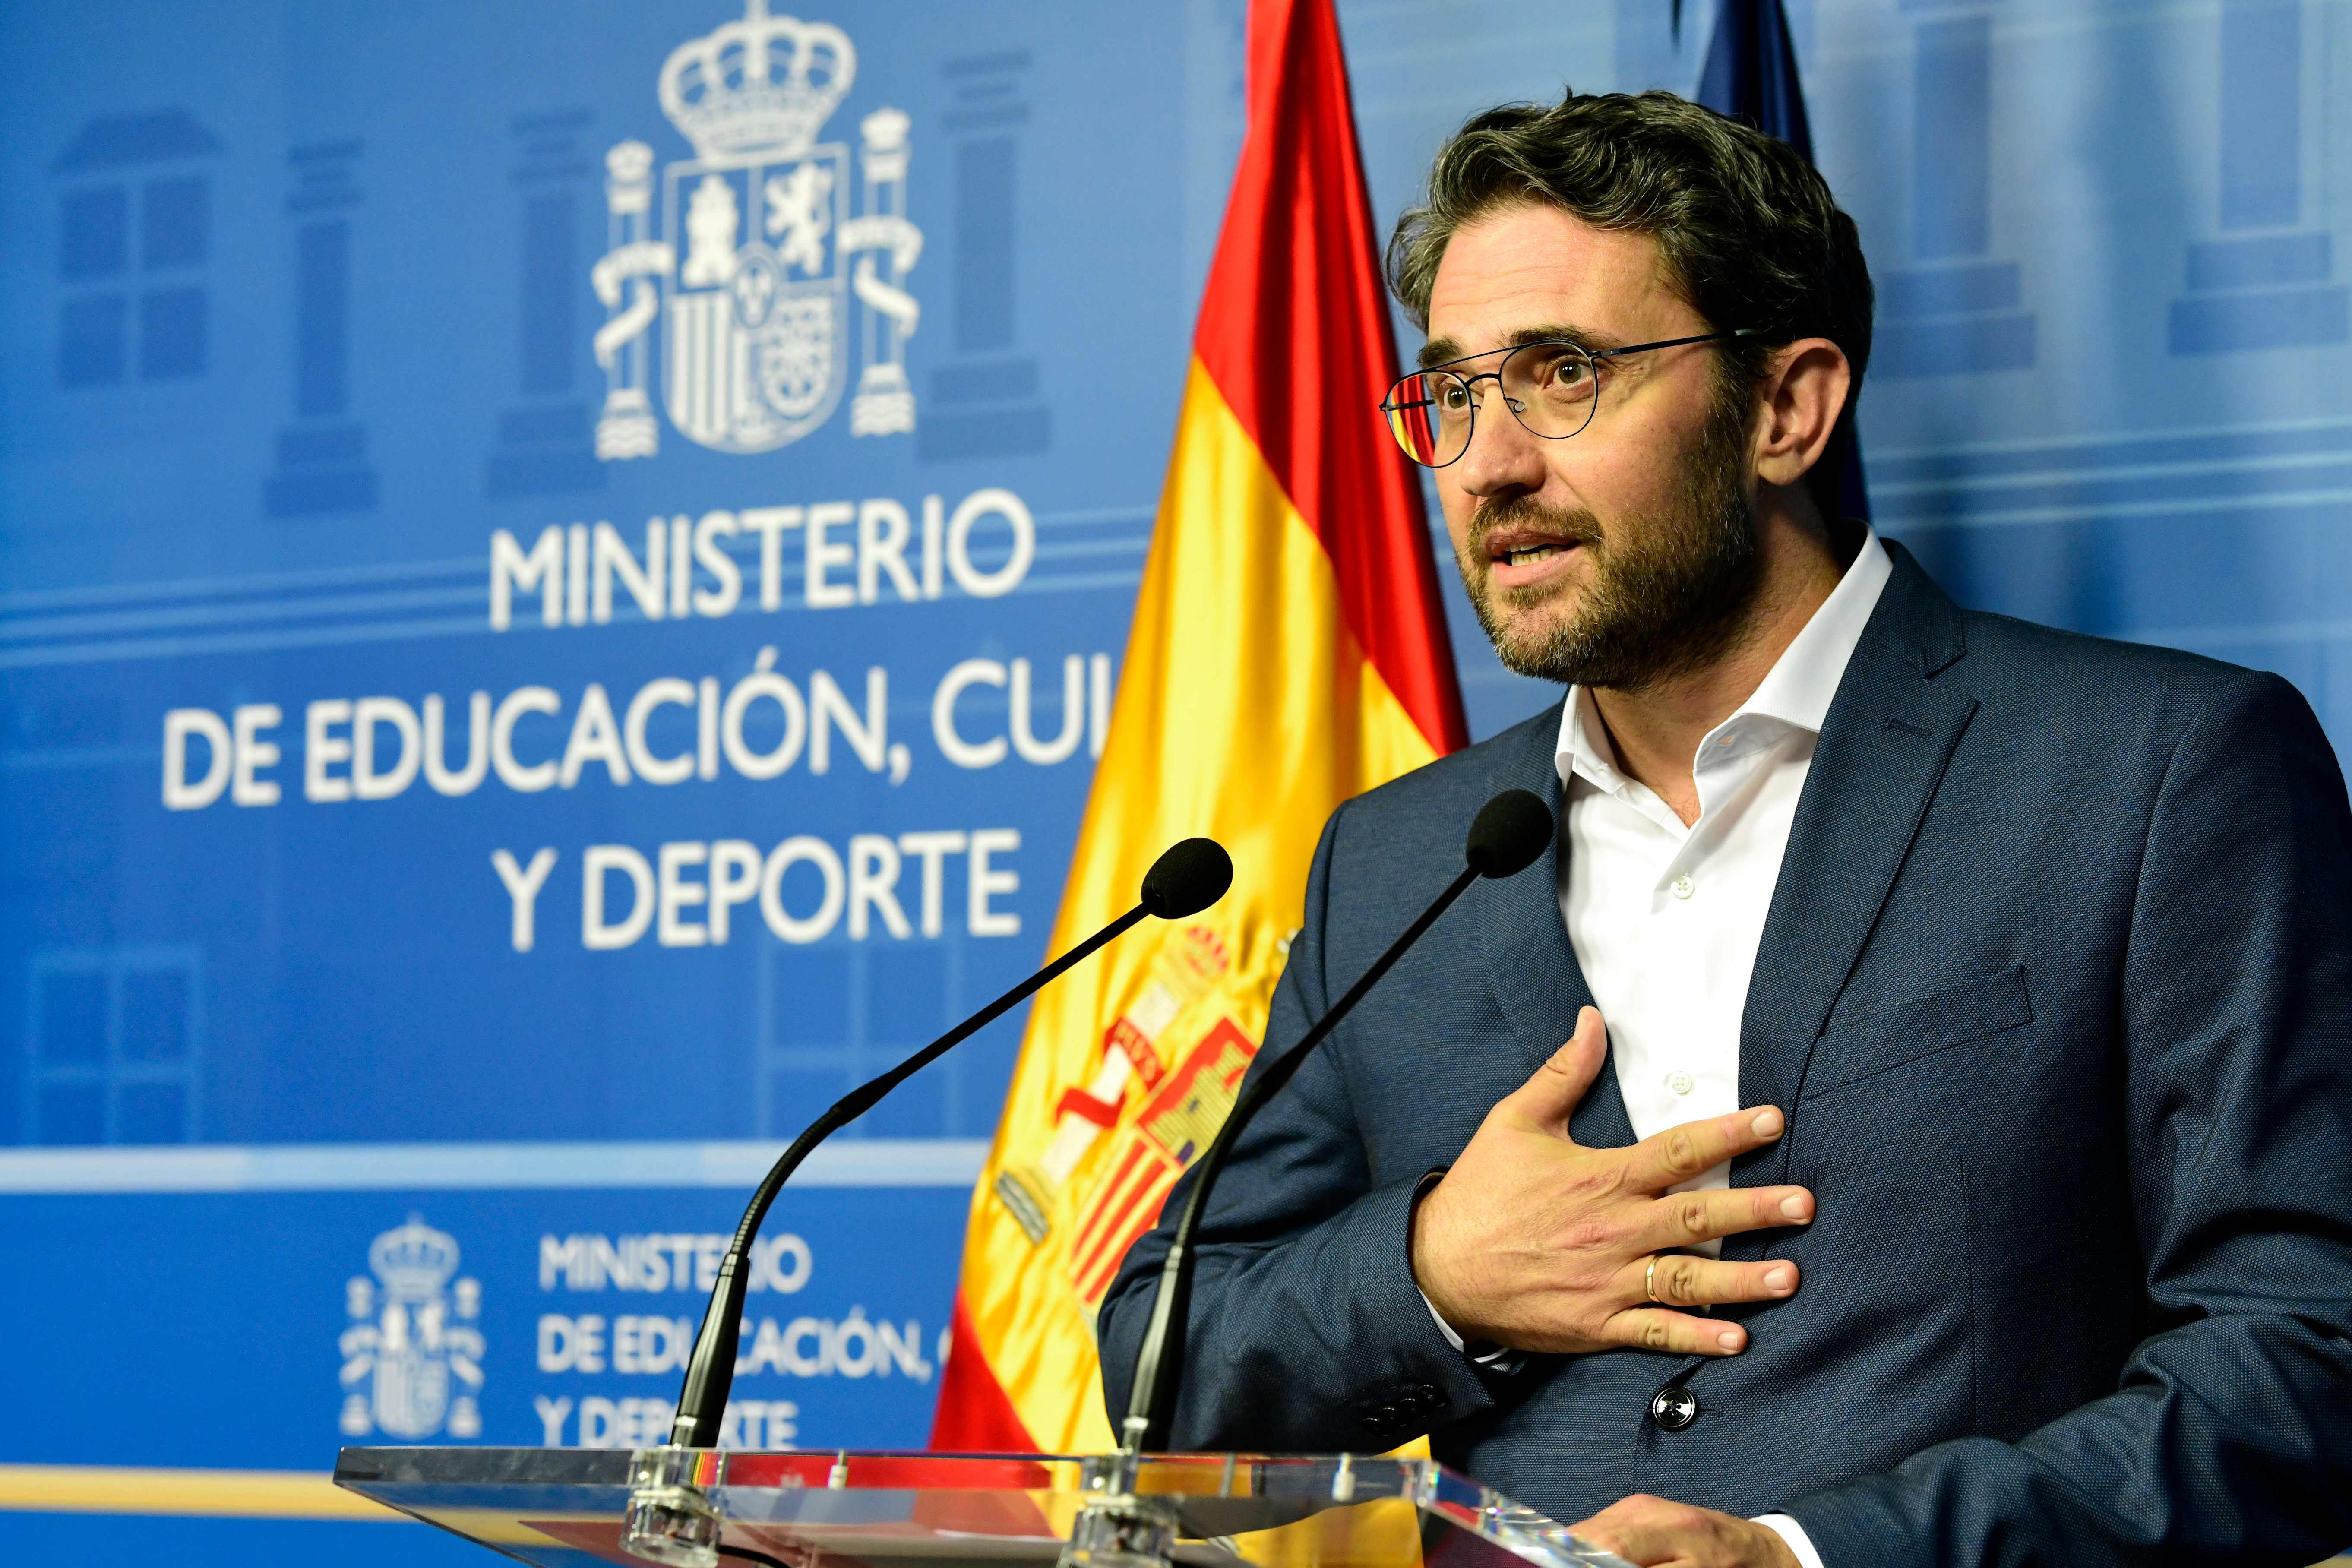 وزير الثقافة الإسبانى مكسيم هويرتا  يقدم استقالته